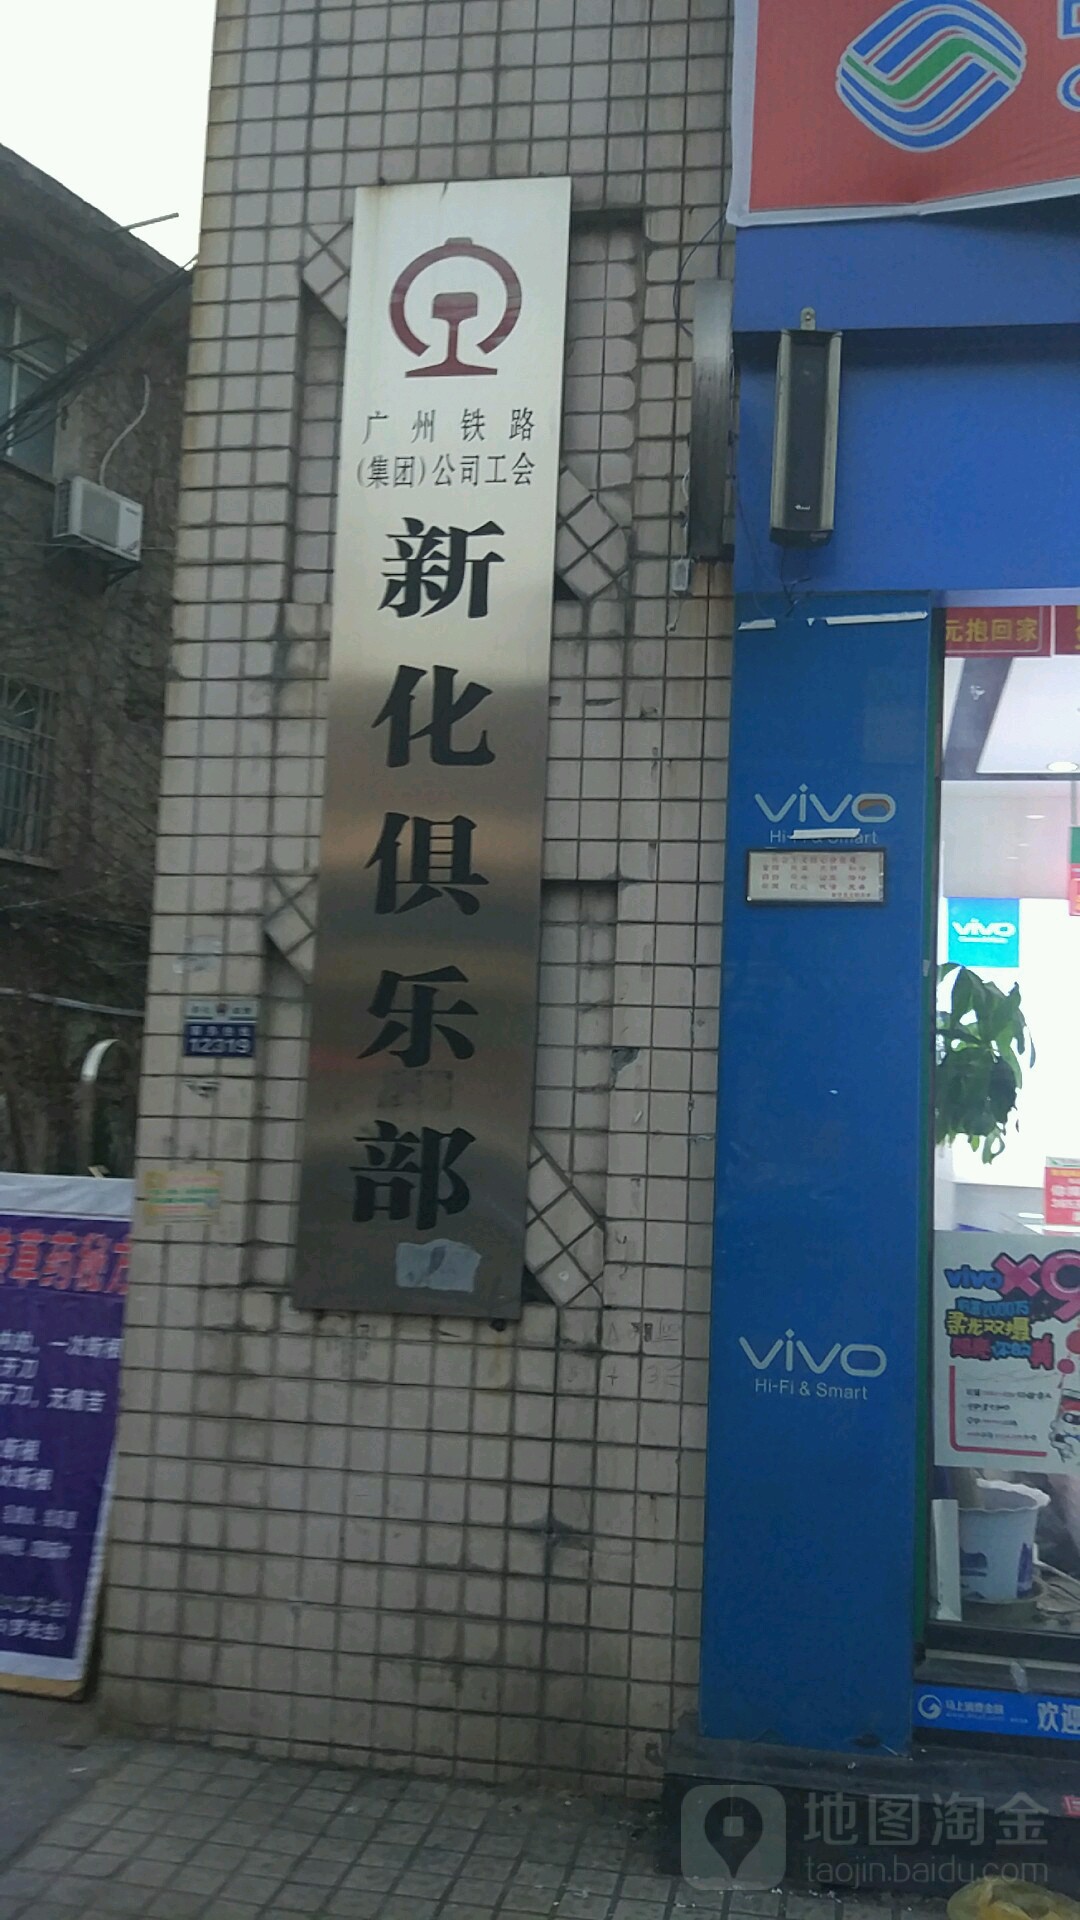 廣州鐵路(集團)公司工會新化俱樂部